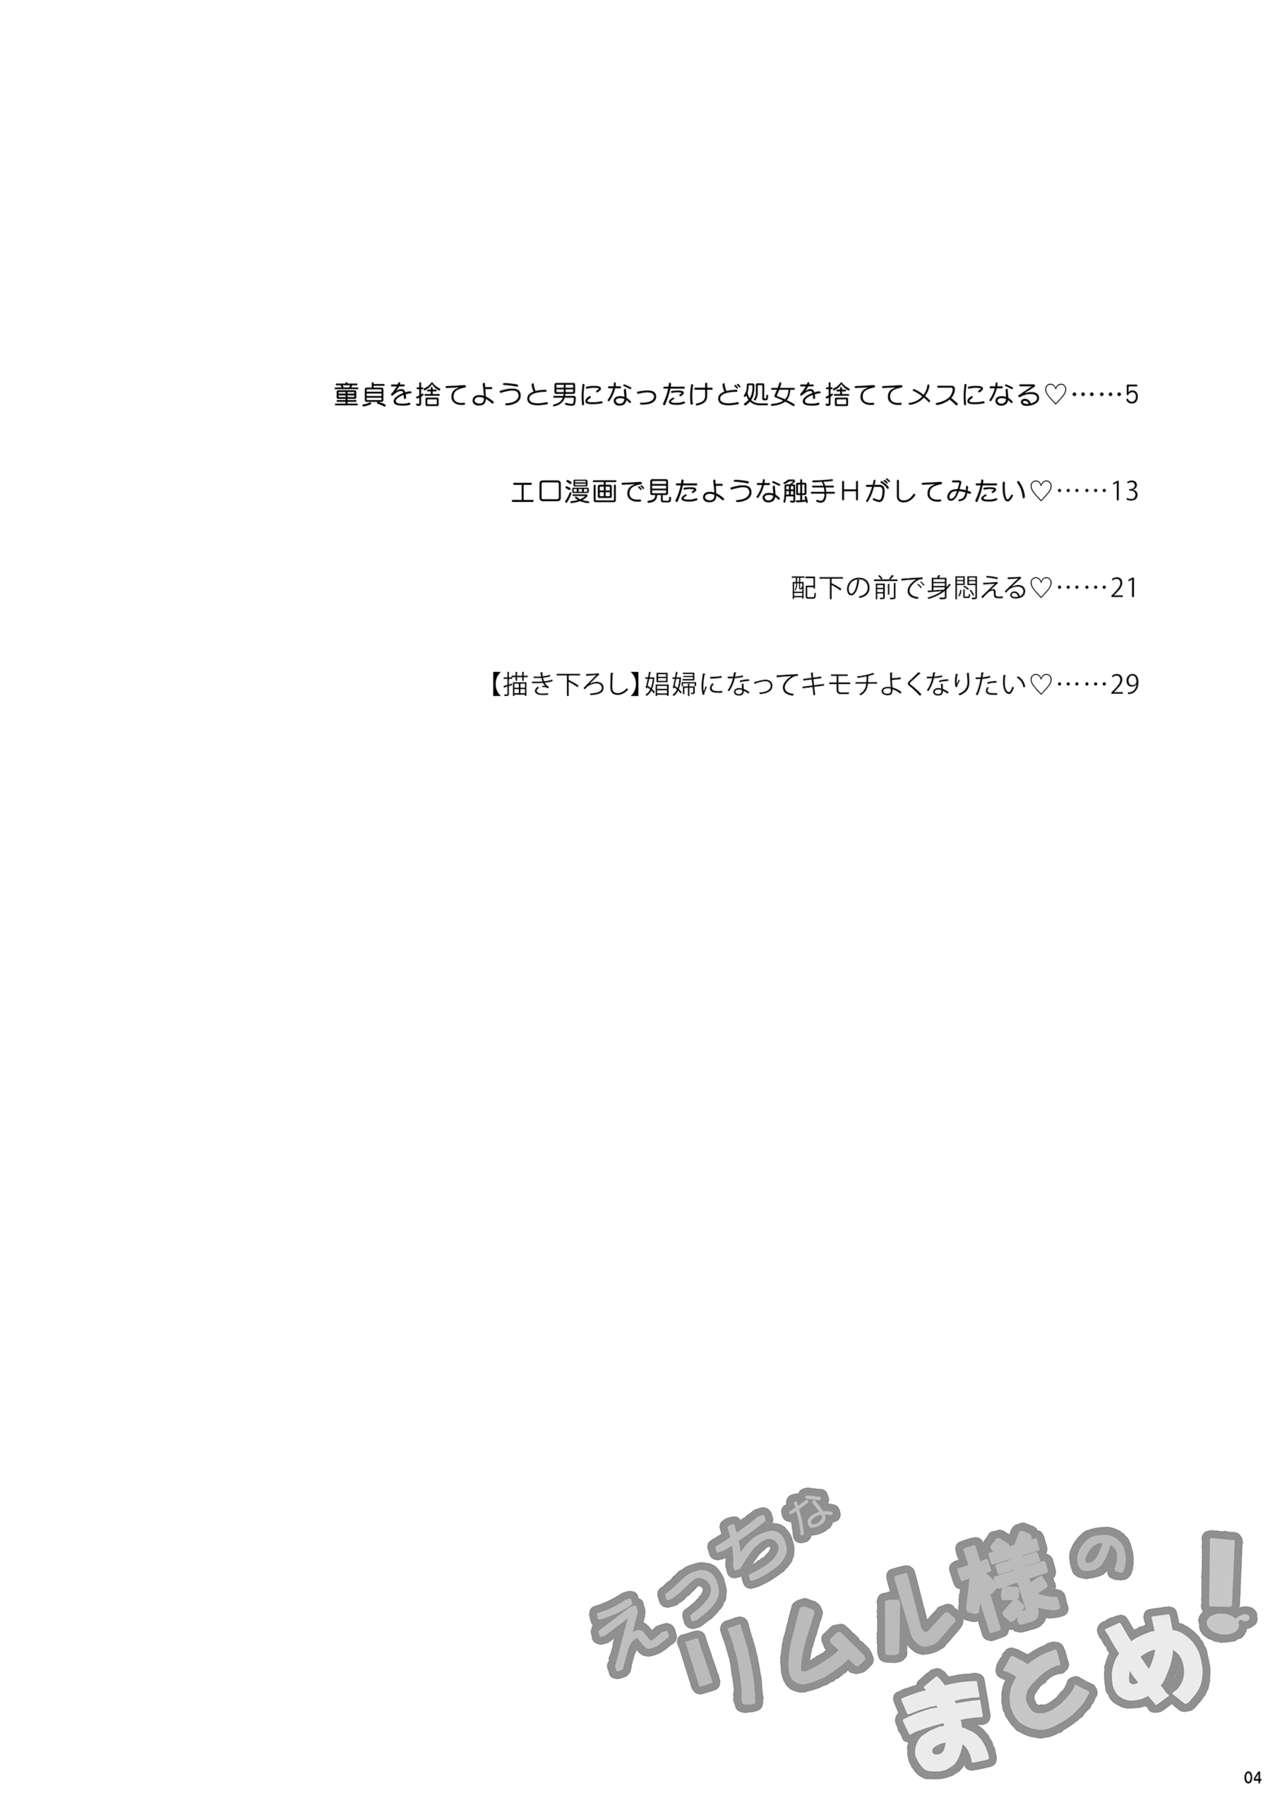 Teamskeet Etchina Rimuru-sama No Matome - Tensei shitara slime datta ken Bisex - Page 3